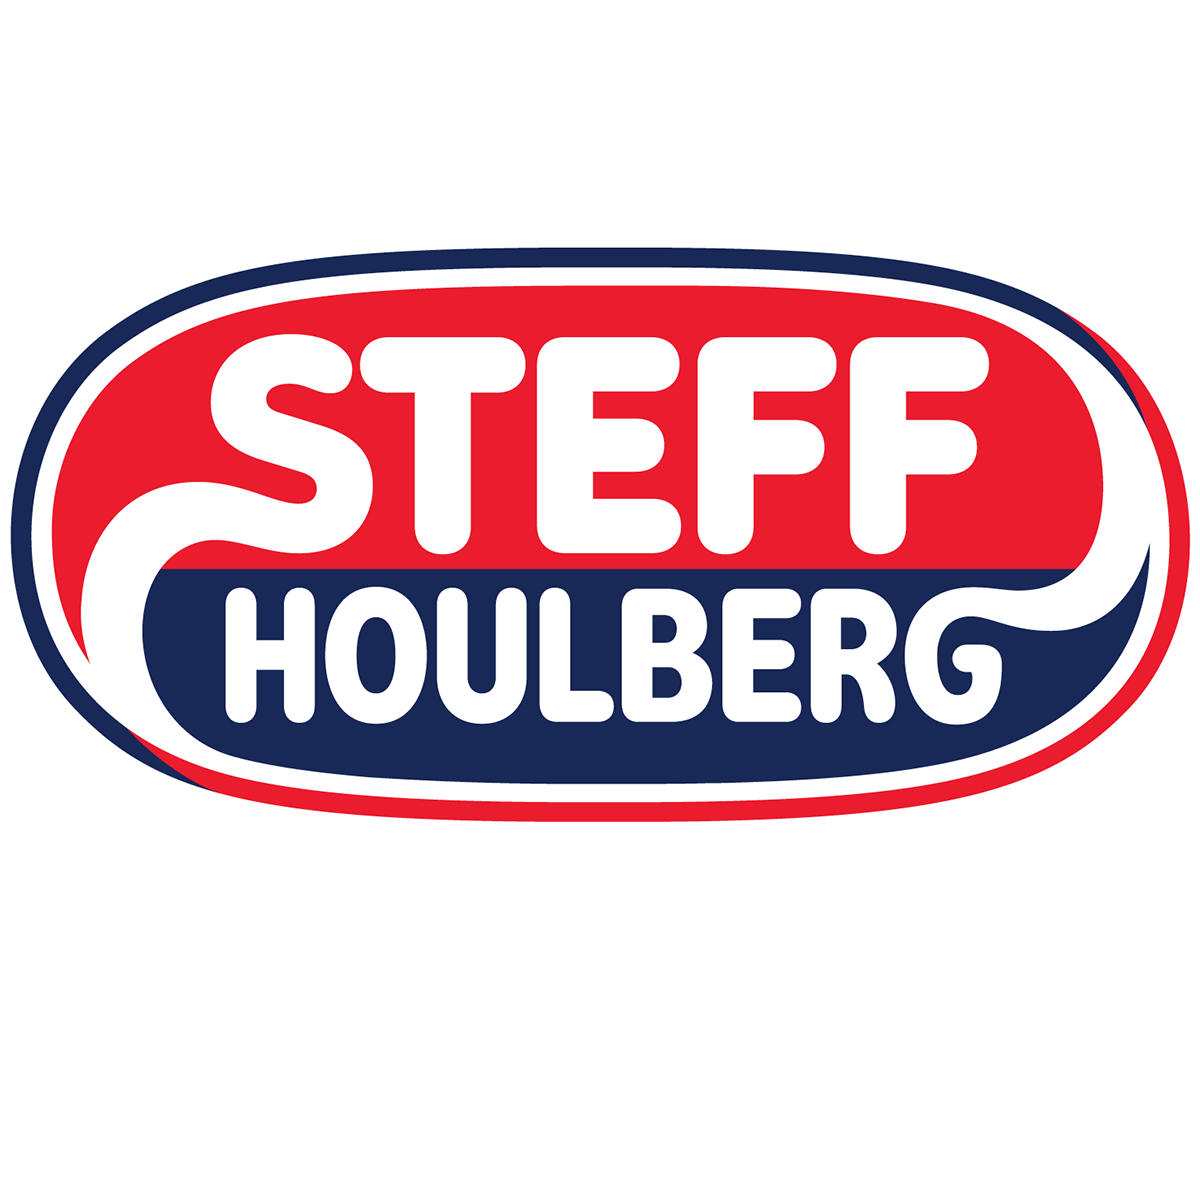 Steff Houlberg